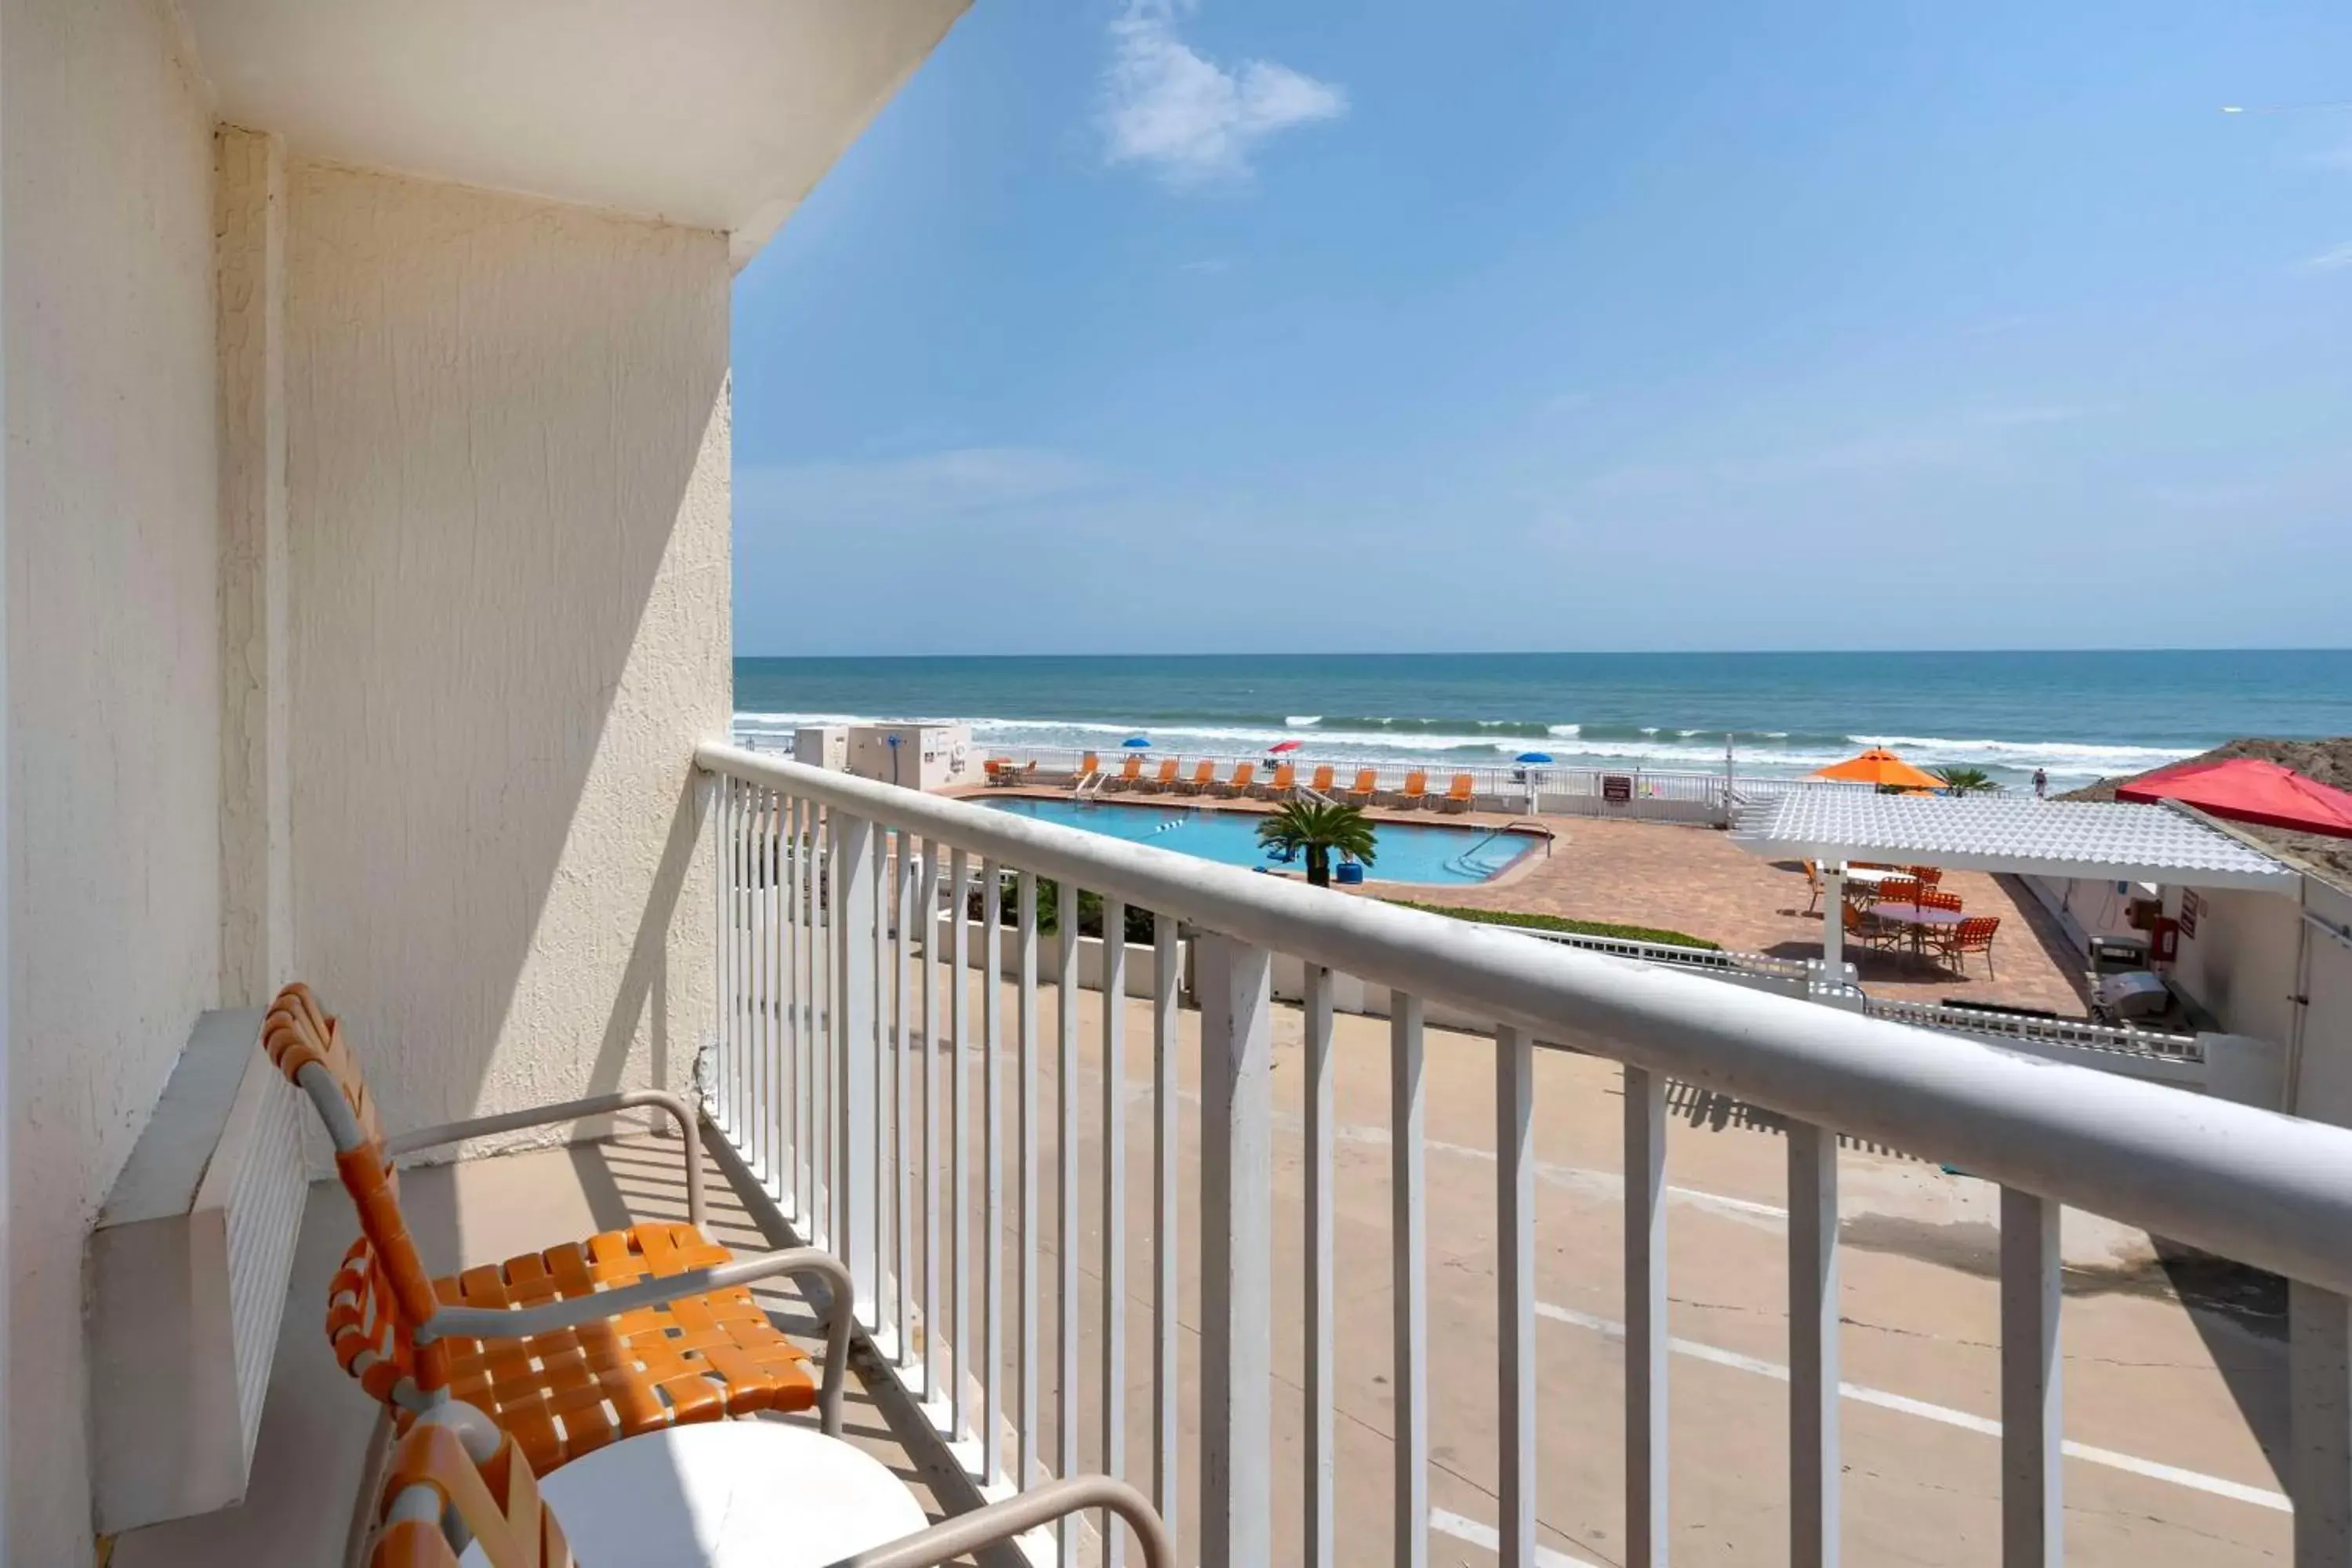 Bedroom, Balcony/Terrace in Best Western Plus Daytona Inn Seabreeze